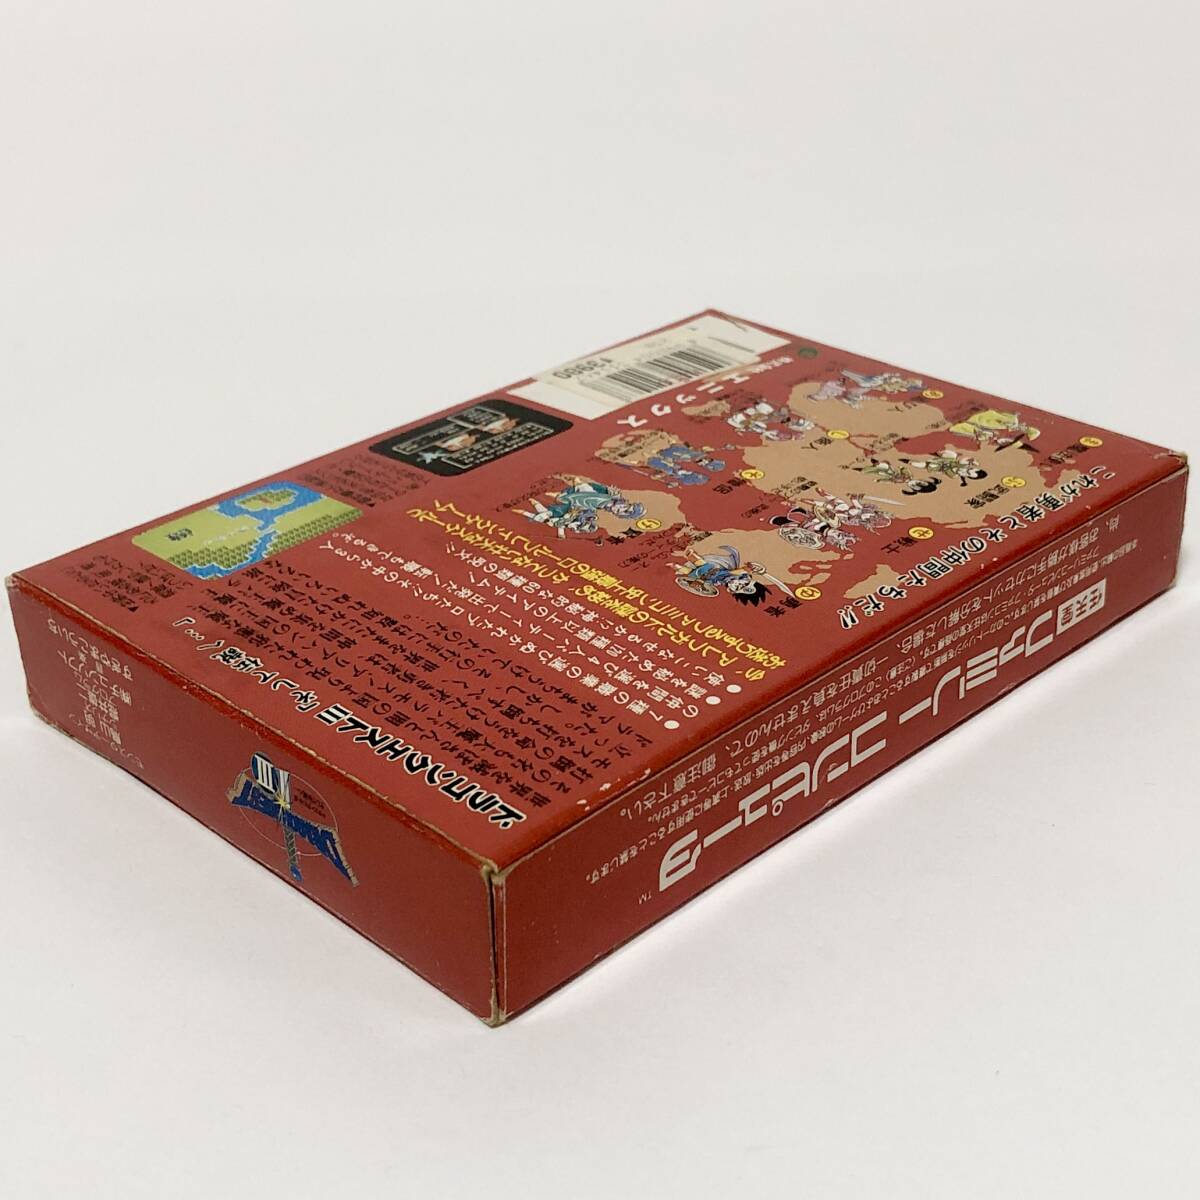 ファミコン ドラゴンクエストⅢ そして伝説へ… 箱説付き 痛みあり ドラクエ エニックス Nintendo Famicom Dragon Quest Ⅲ CIB Enix_画像6